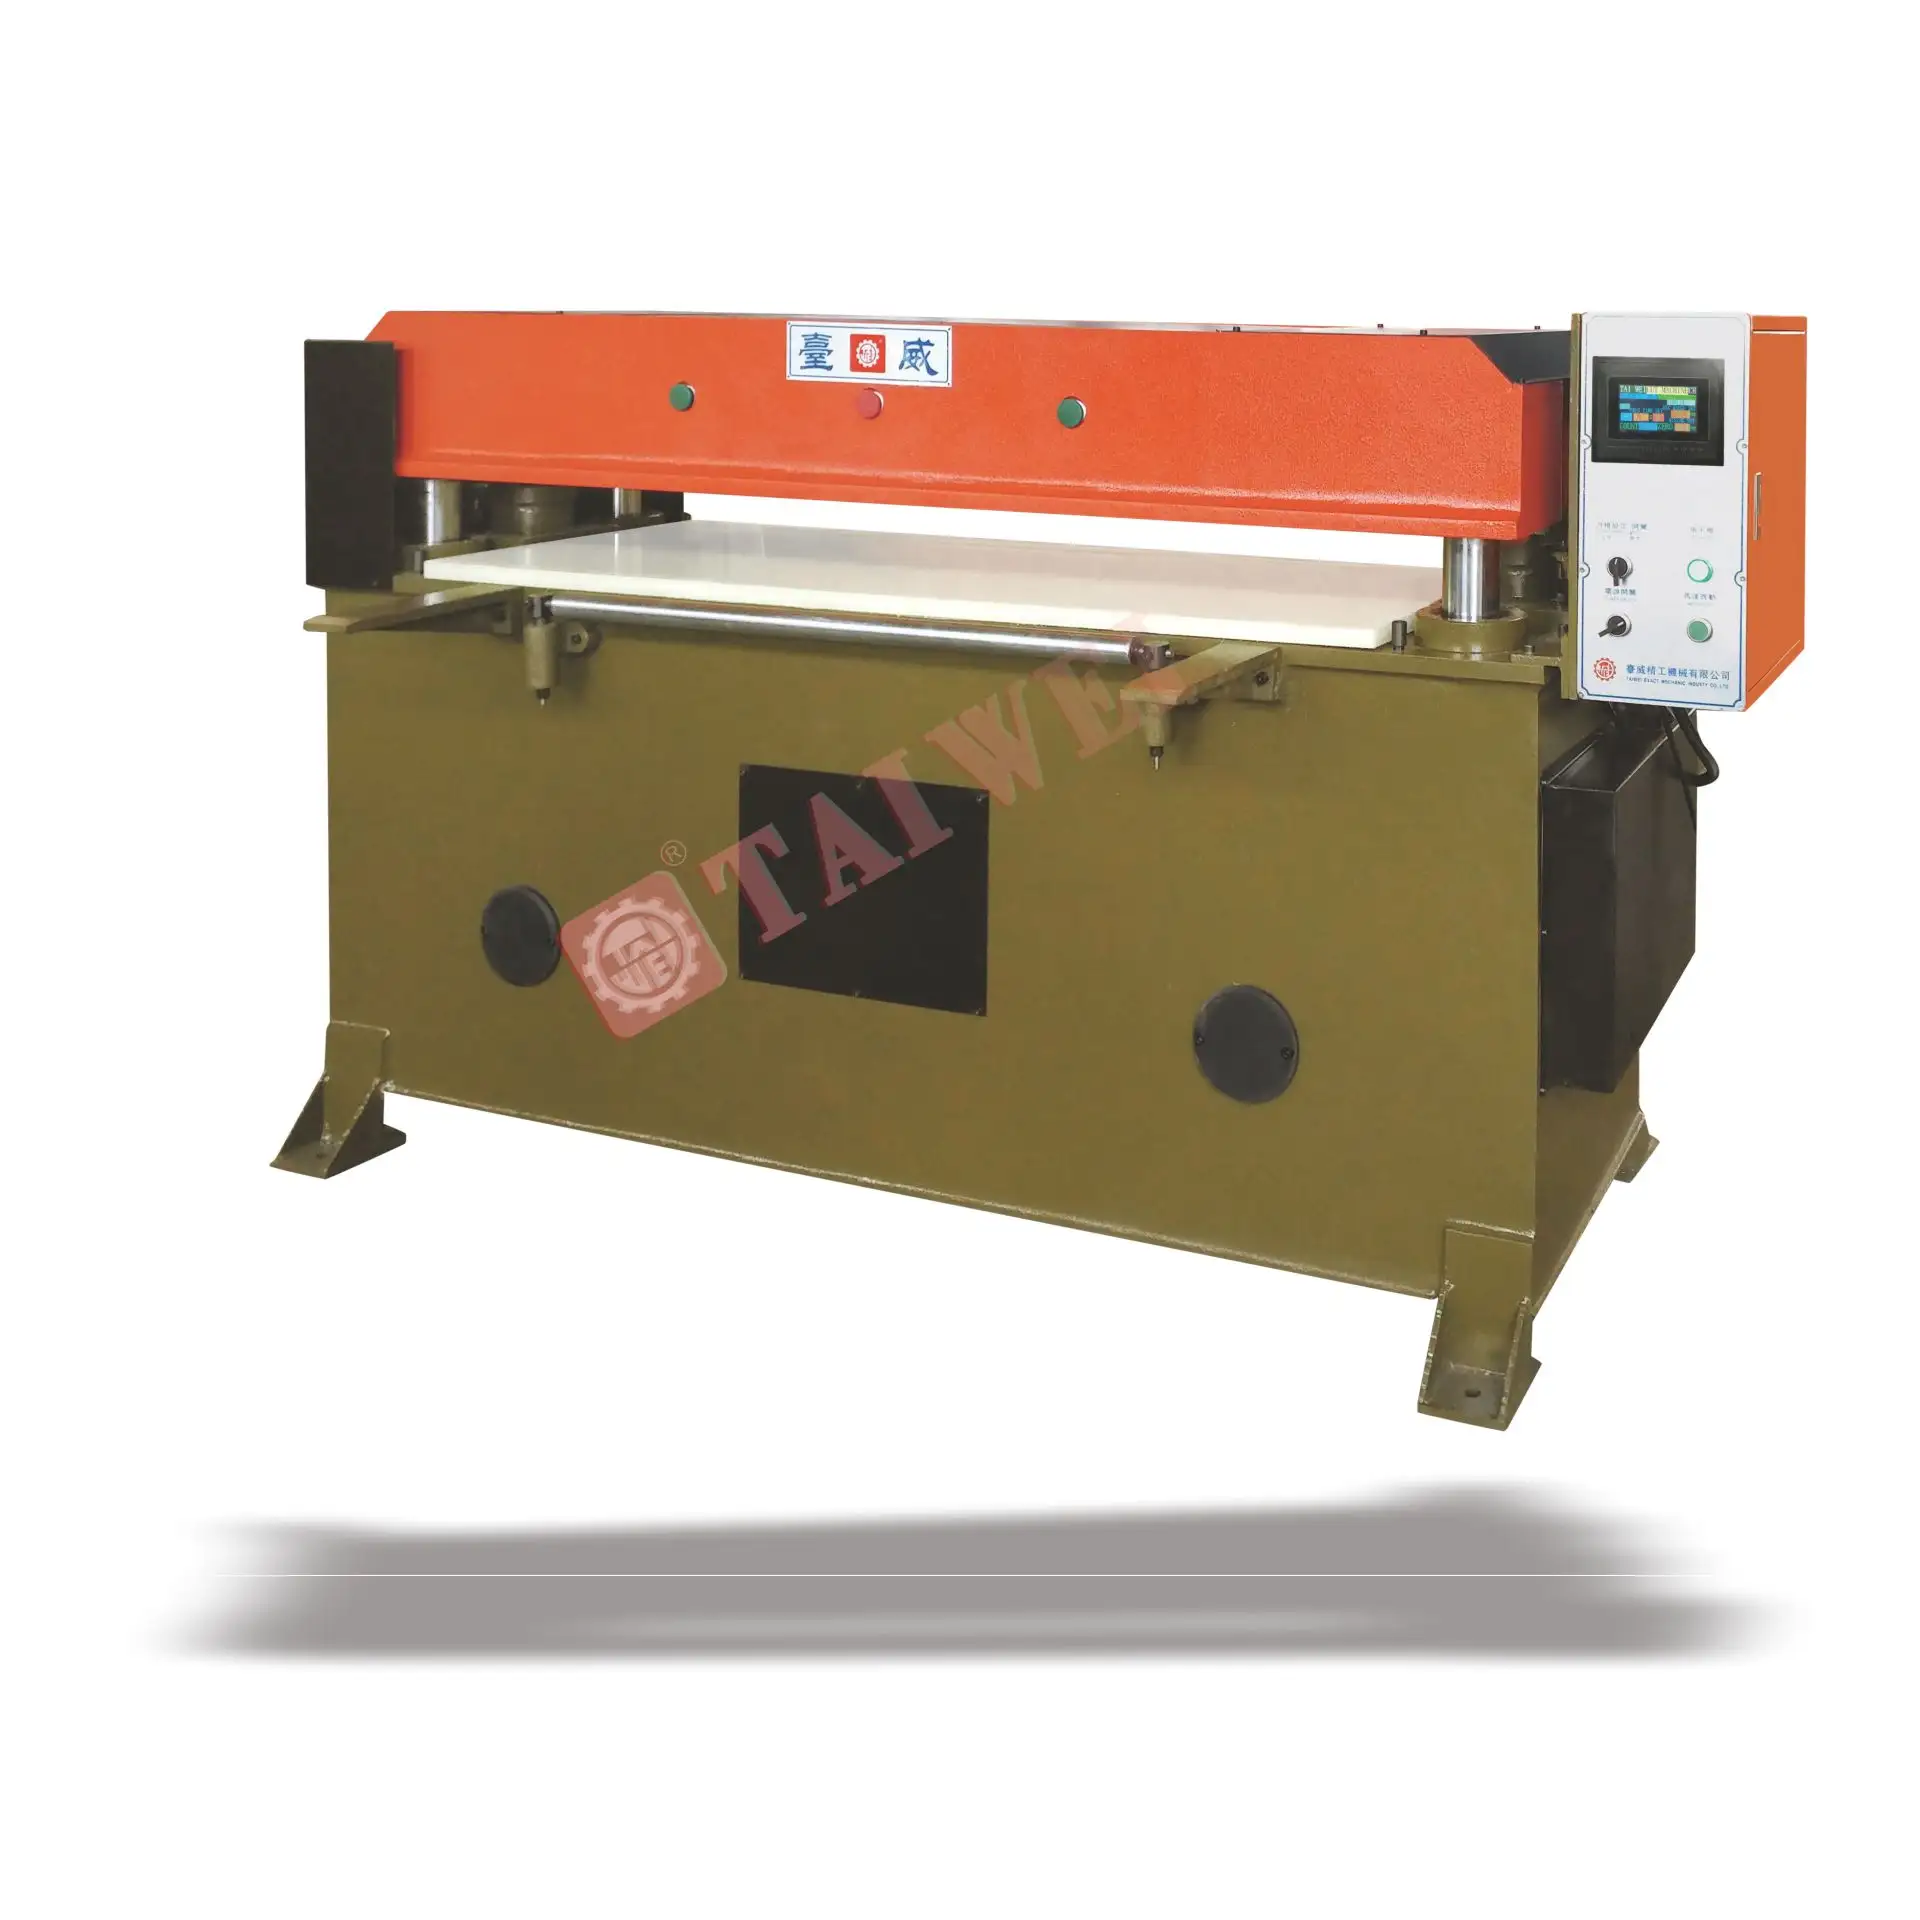 Foam cutting machine Manual die cutting press Precise four column hydraulic metal cutting press machine